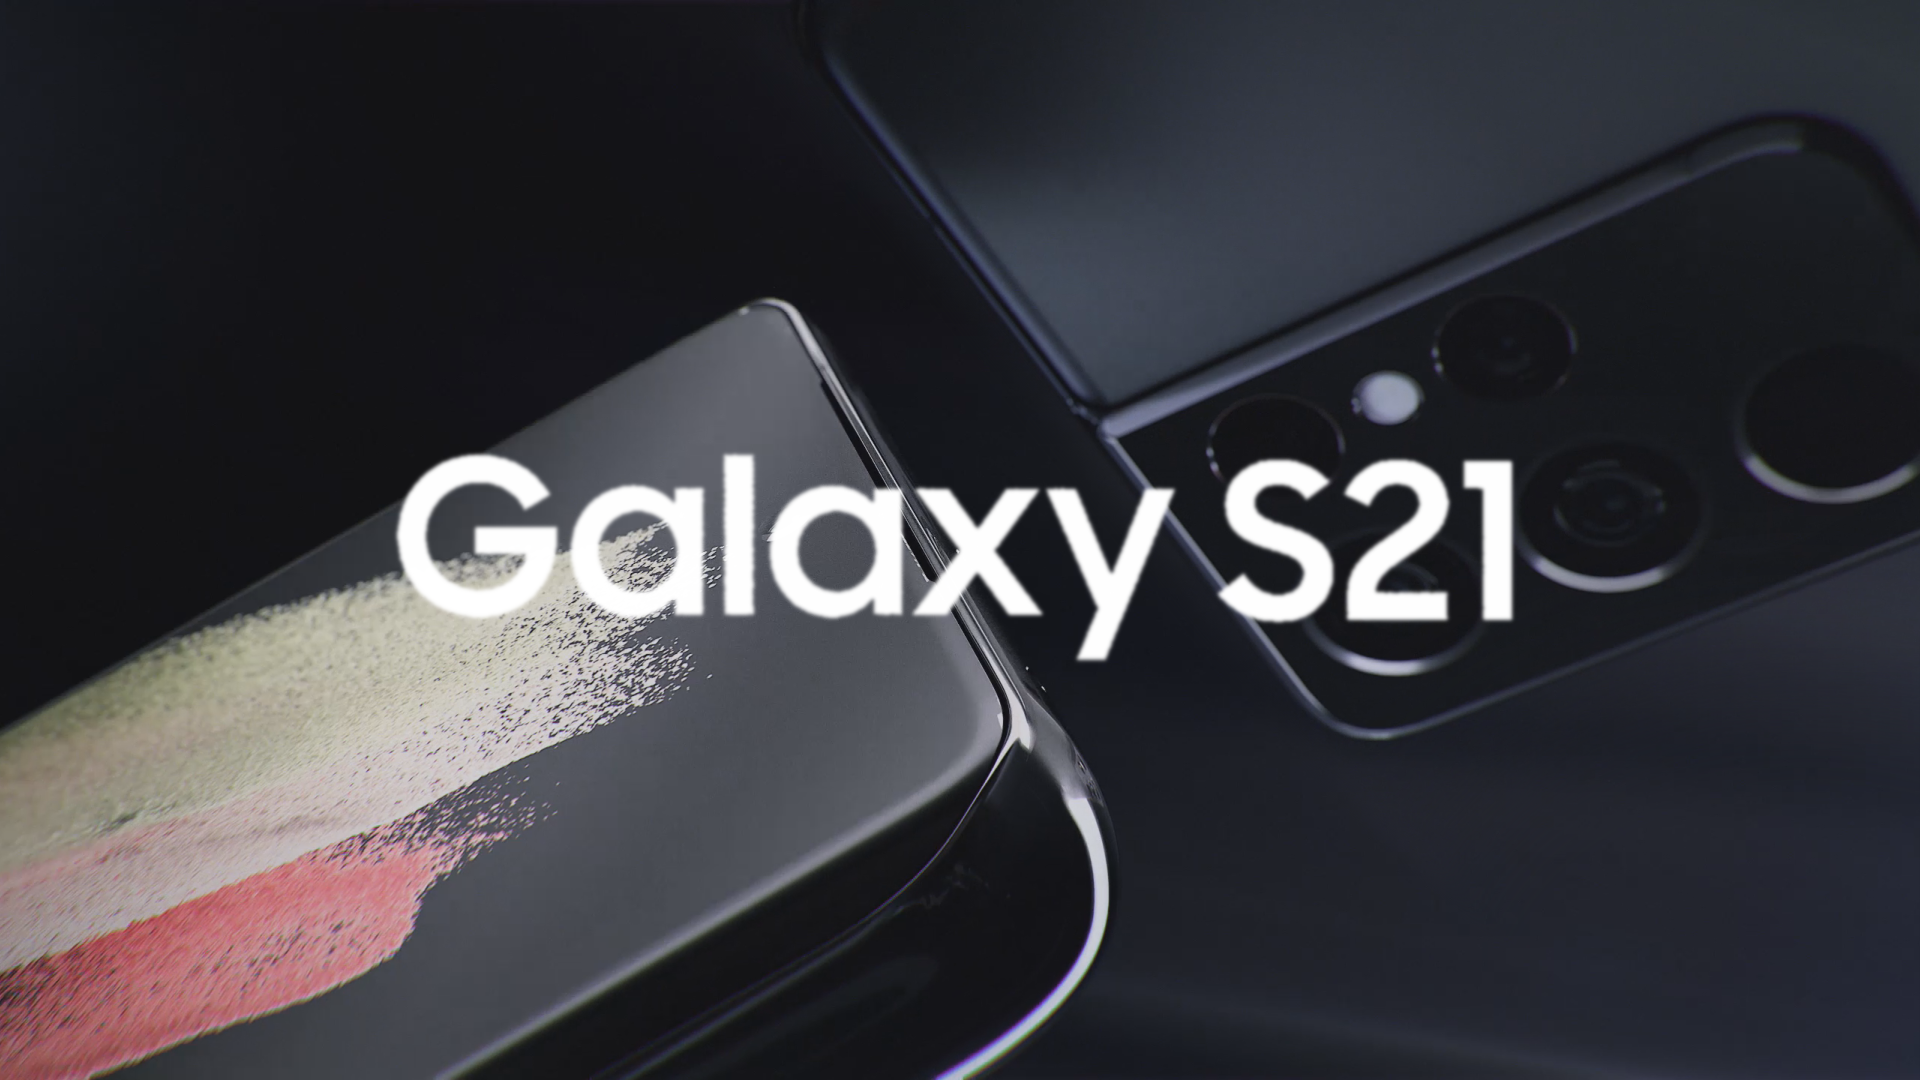 Samsung Galaxy S21 ufficiale: confermato evento di presentazione il 14 gennaio (video)